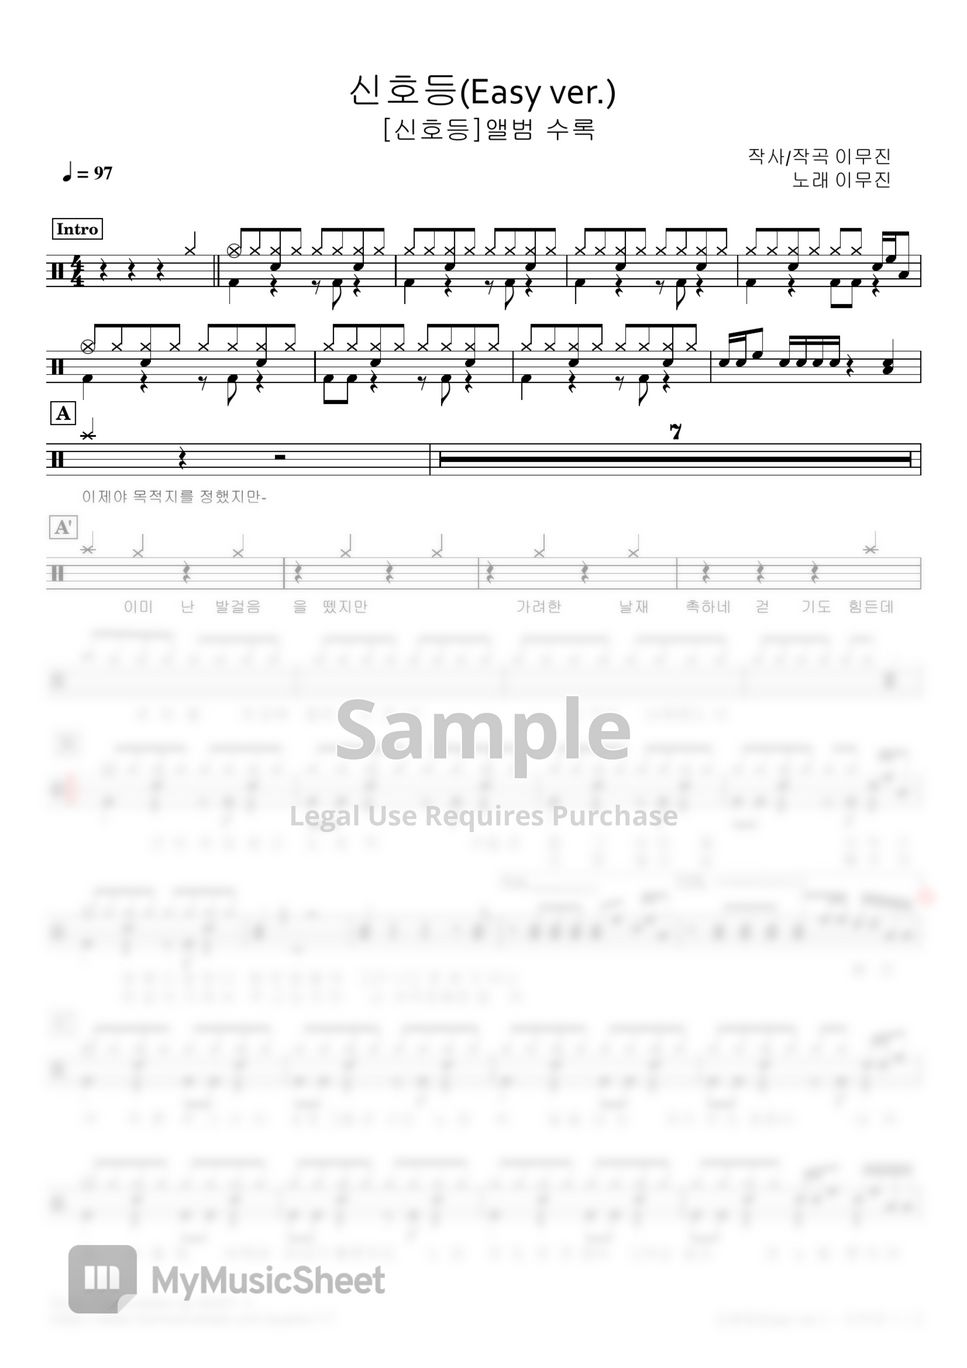 Lee Mujin - Traffic Light(Easy ver.) (Drum sheet / Easy ver. / Including lyrics) by NOEY :)